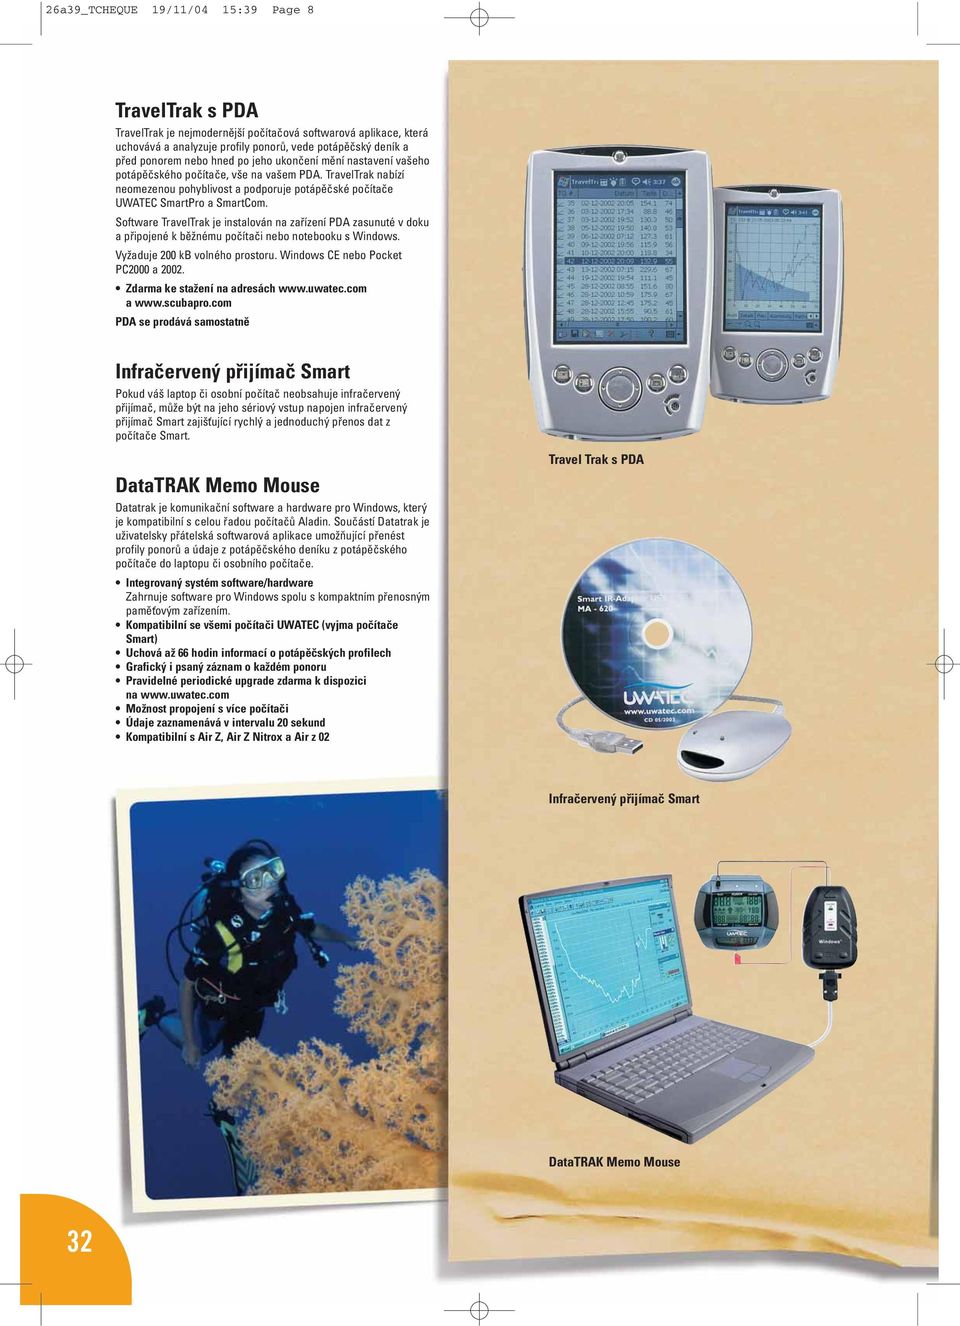 Software TravelTrak je instalován na zařízení PDA zasunuté v doku a připojené k běžnému počítači nebo notebooku s Windows. Vyžaduje 200 kb volného prostoru. Windows CE nebo Pocket PC2000 a 2002.